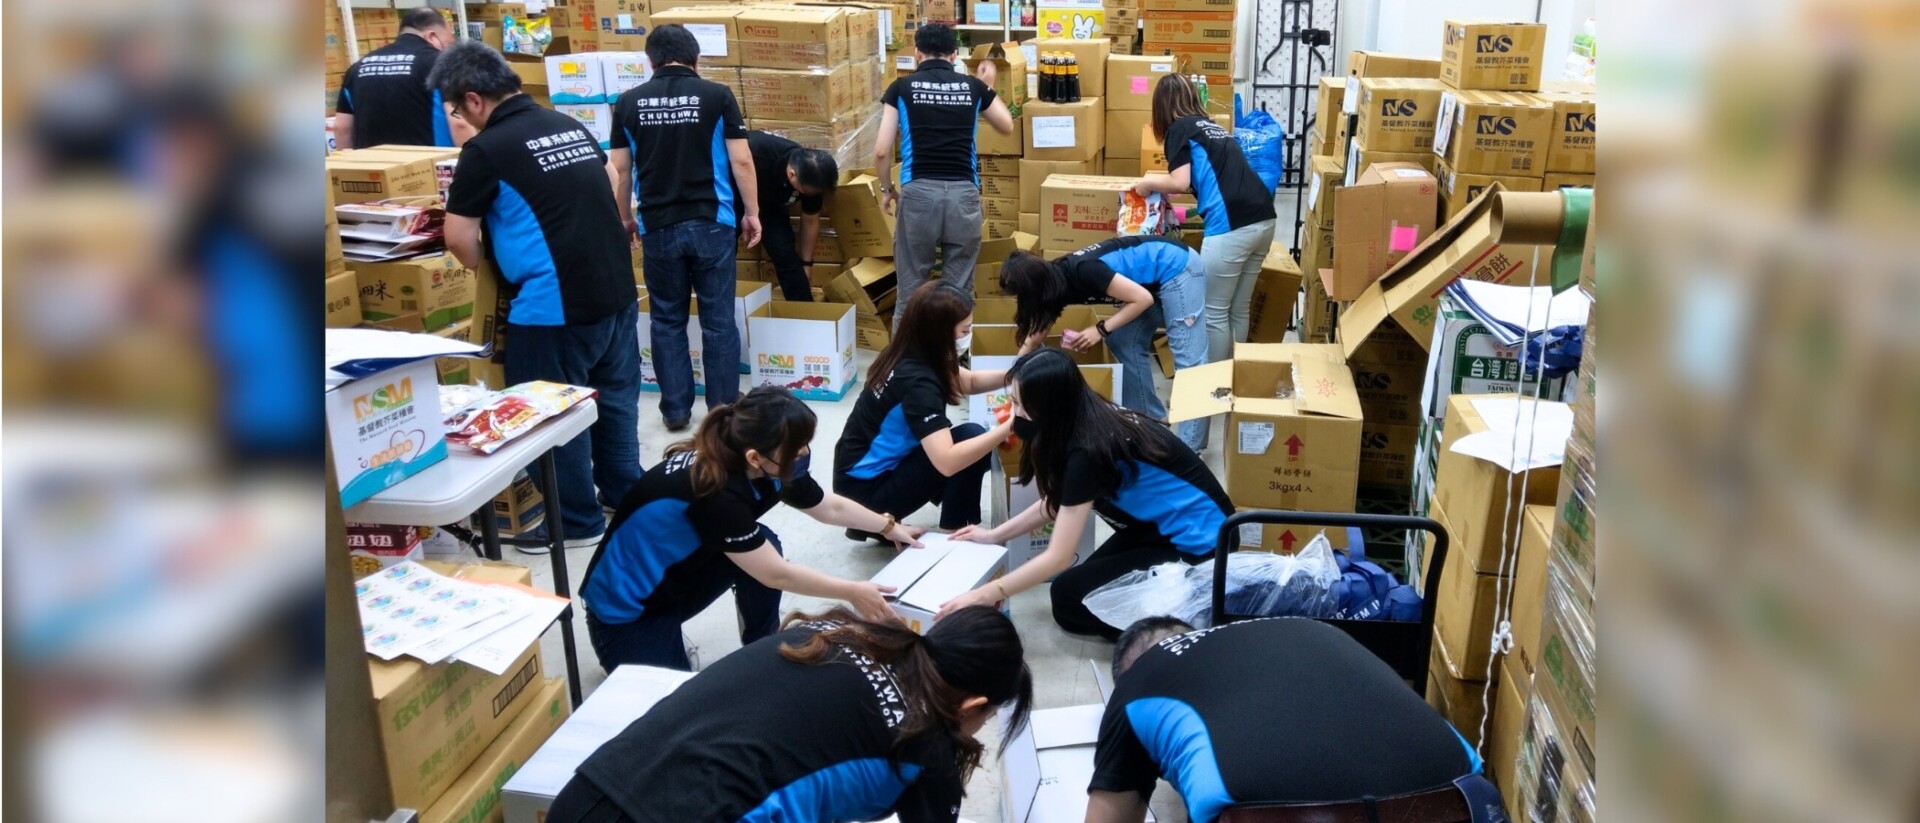 中華系統整合公司號召員工共同參與生活照顧箱物分裝，一共完成50箱愛心物資箱